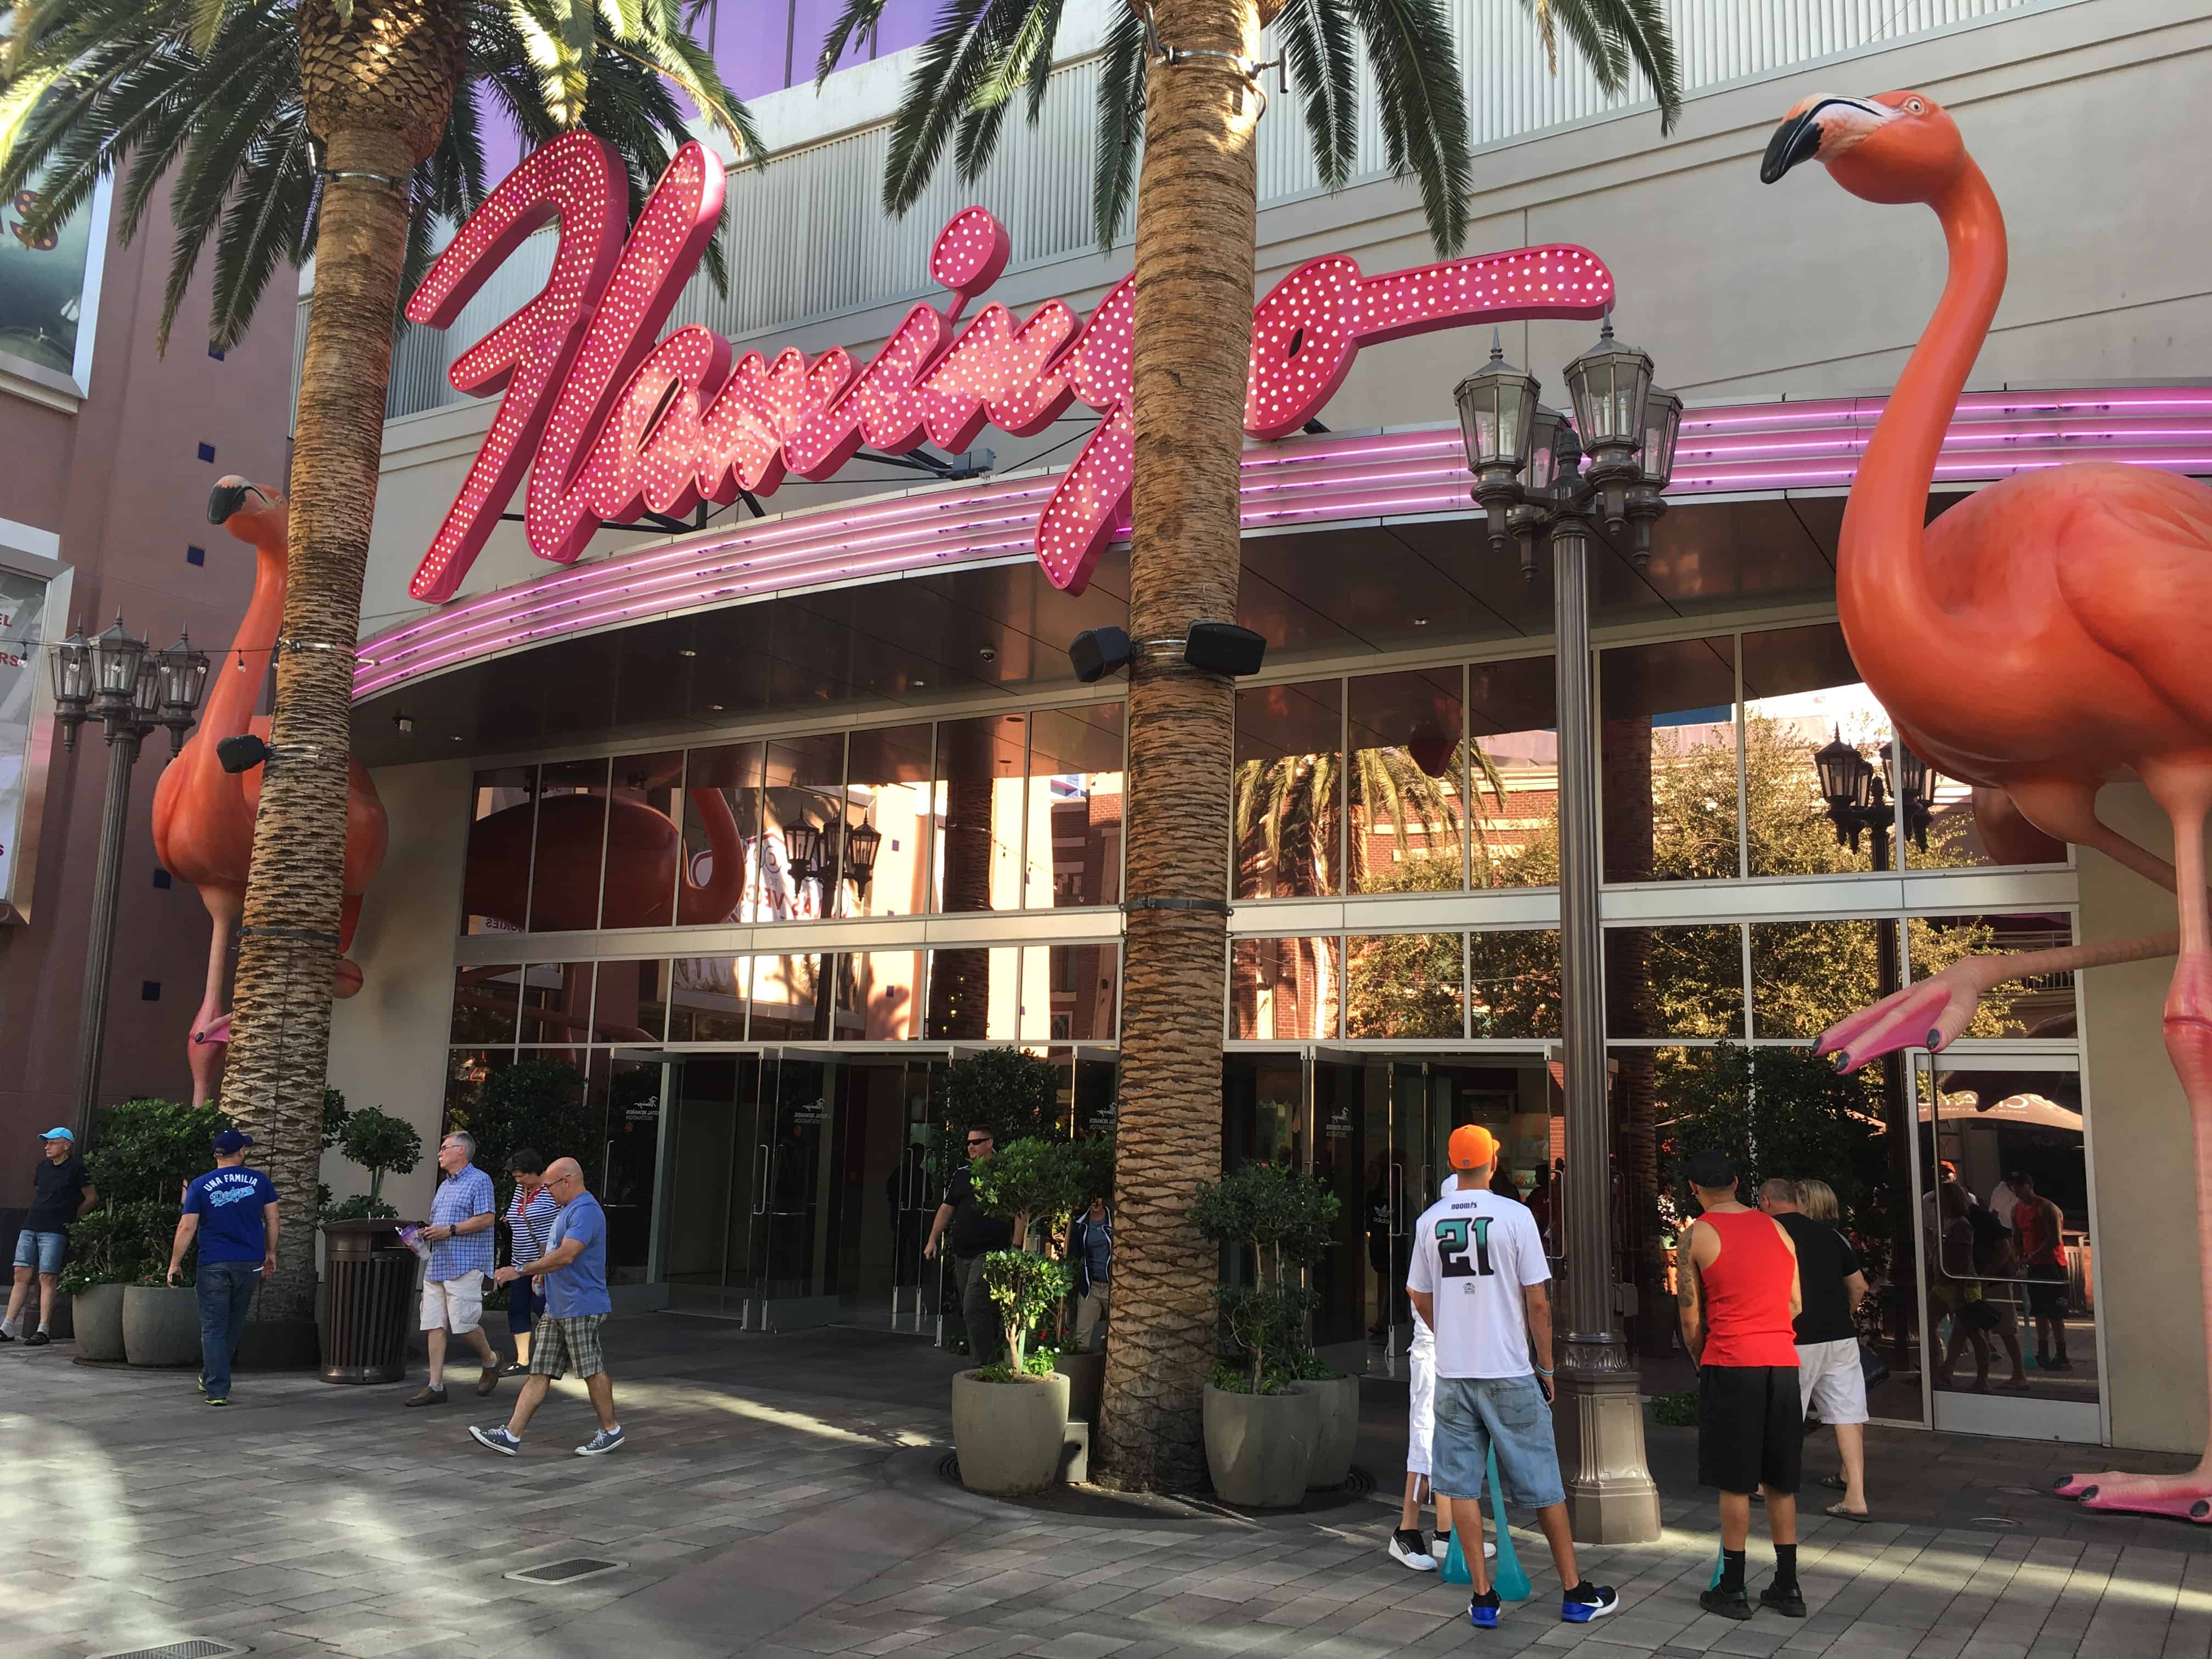 The Flamingo in Las Vegas, Nevada